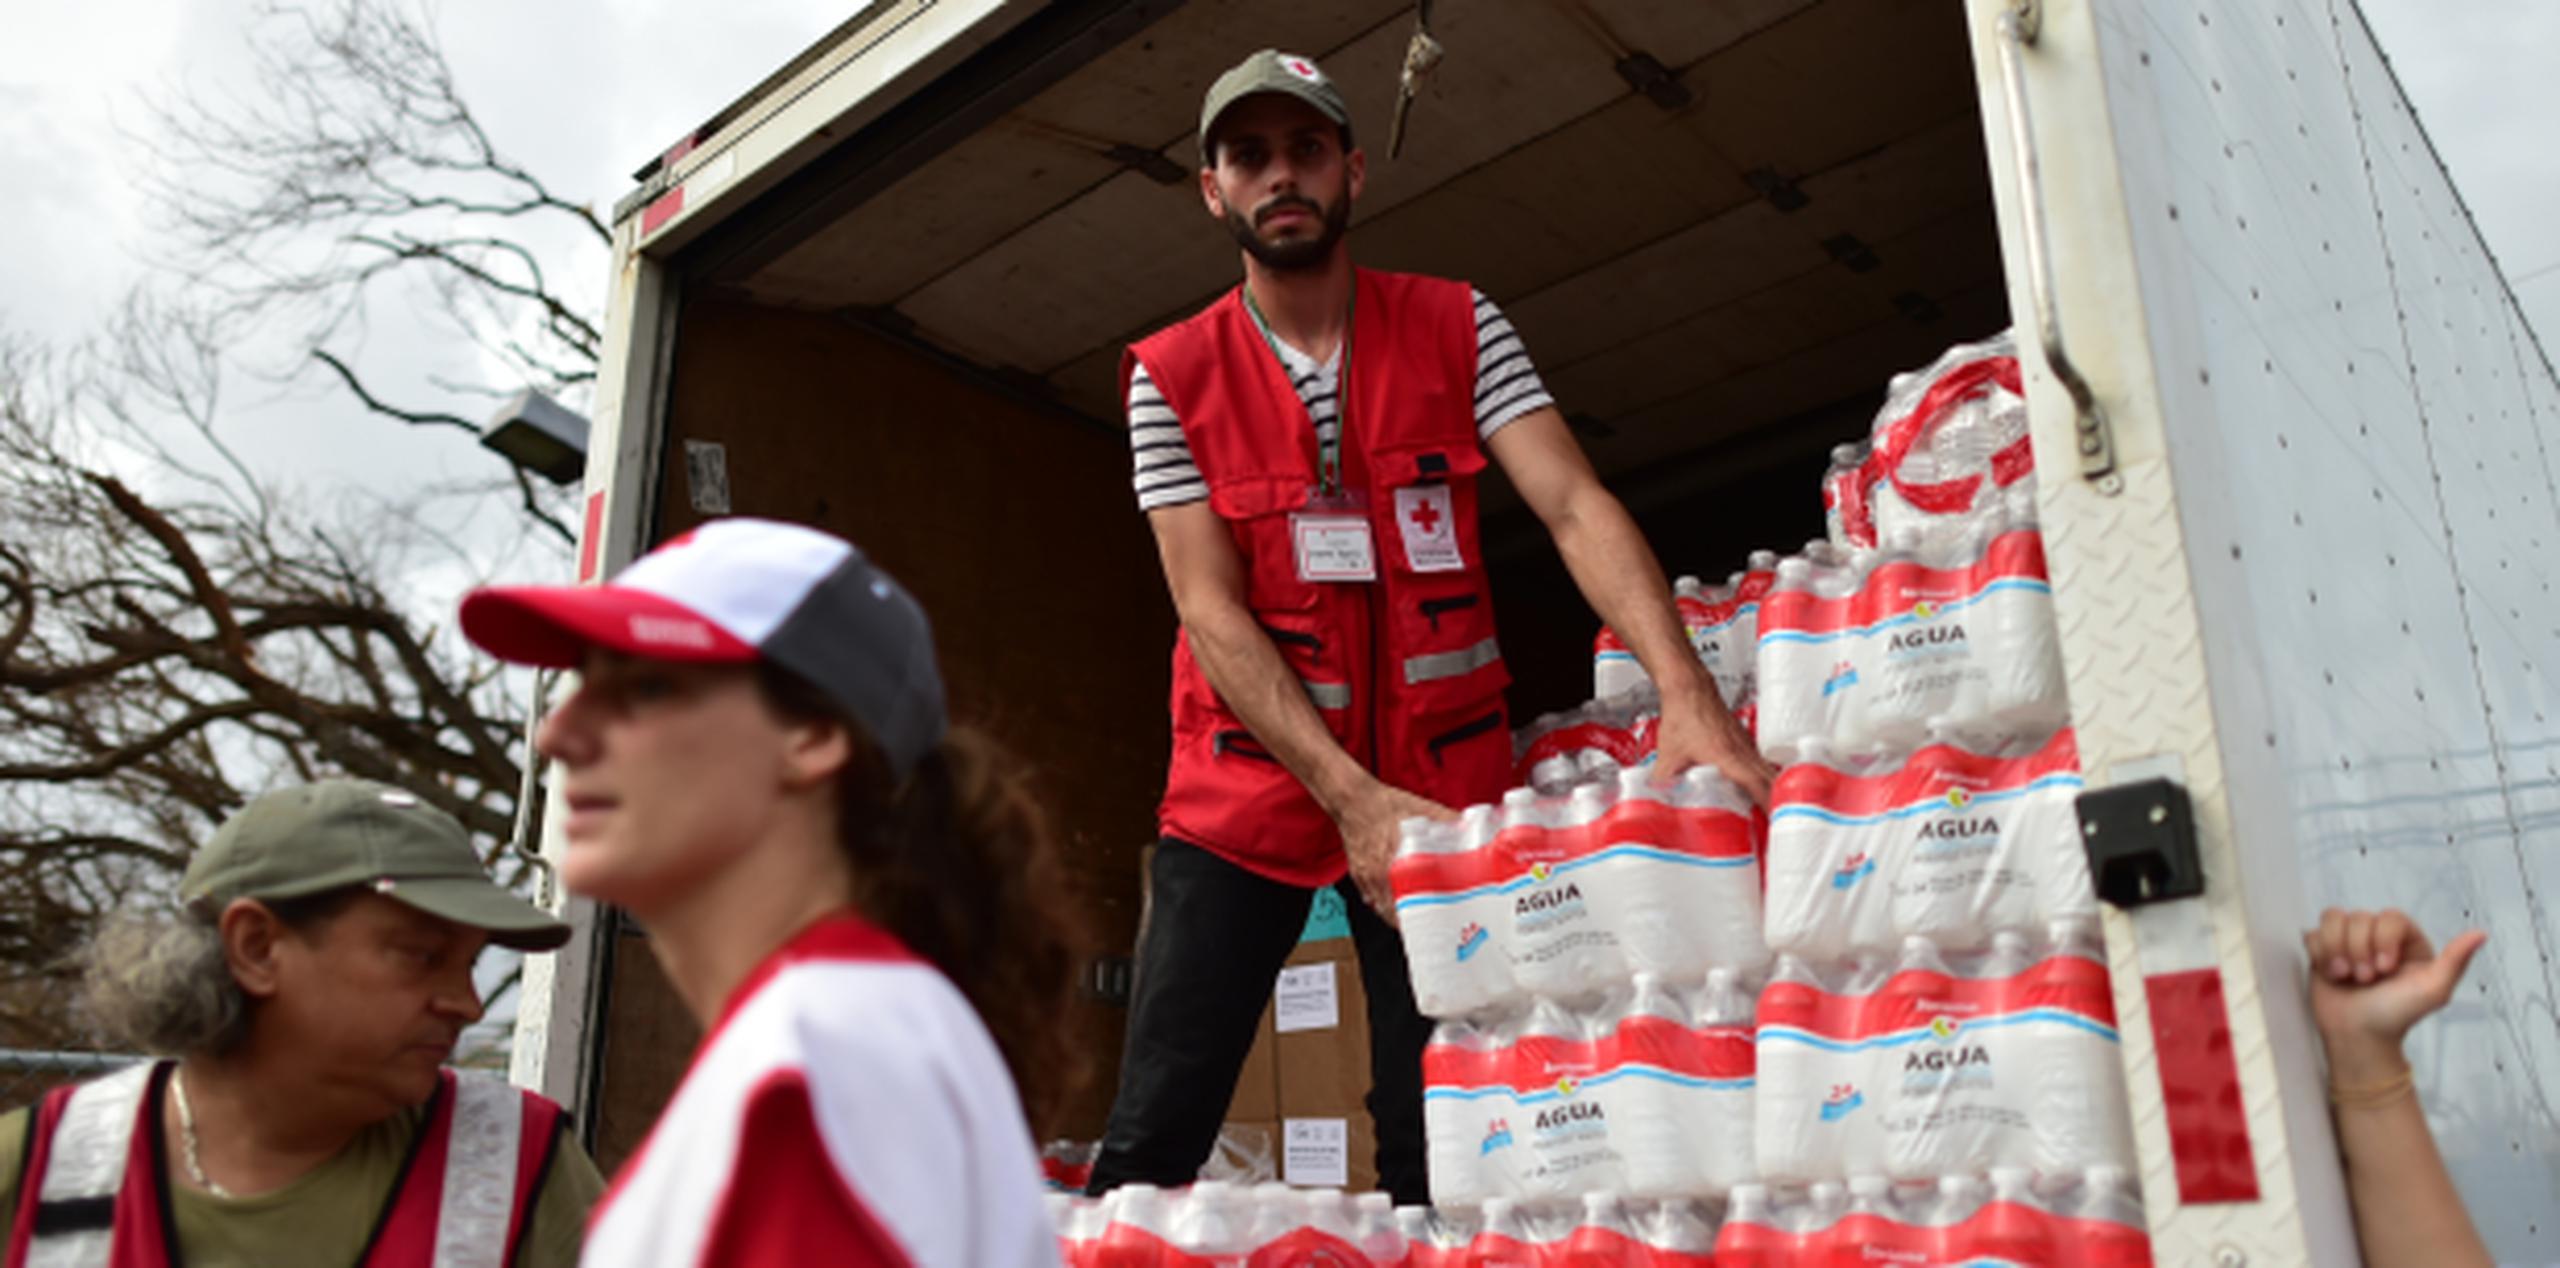 La Cruz Roja visitó los 78 municipios de Puerto Rico para distribuir alimentos y agua a los residentes. (Archivo)